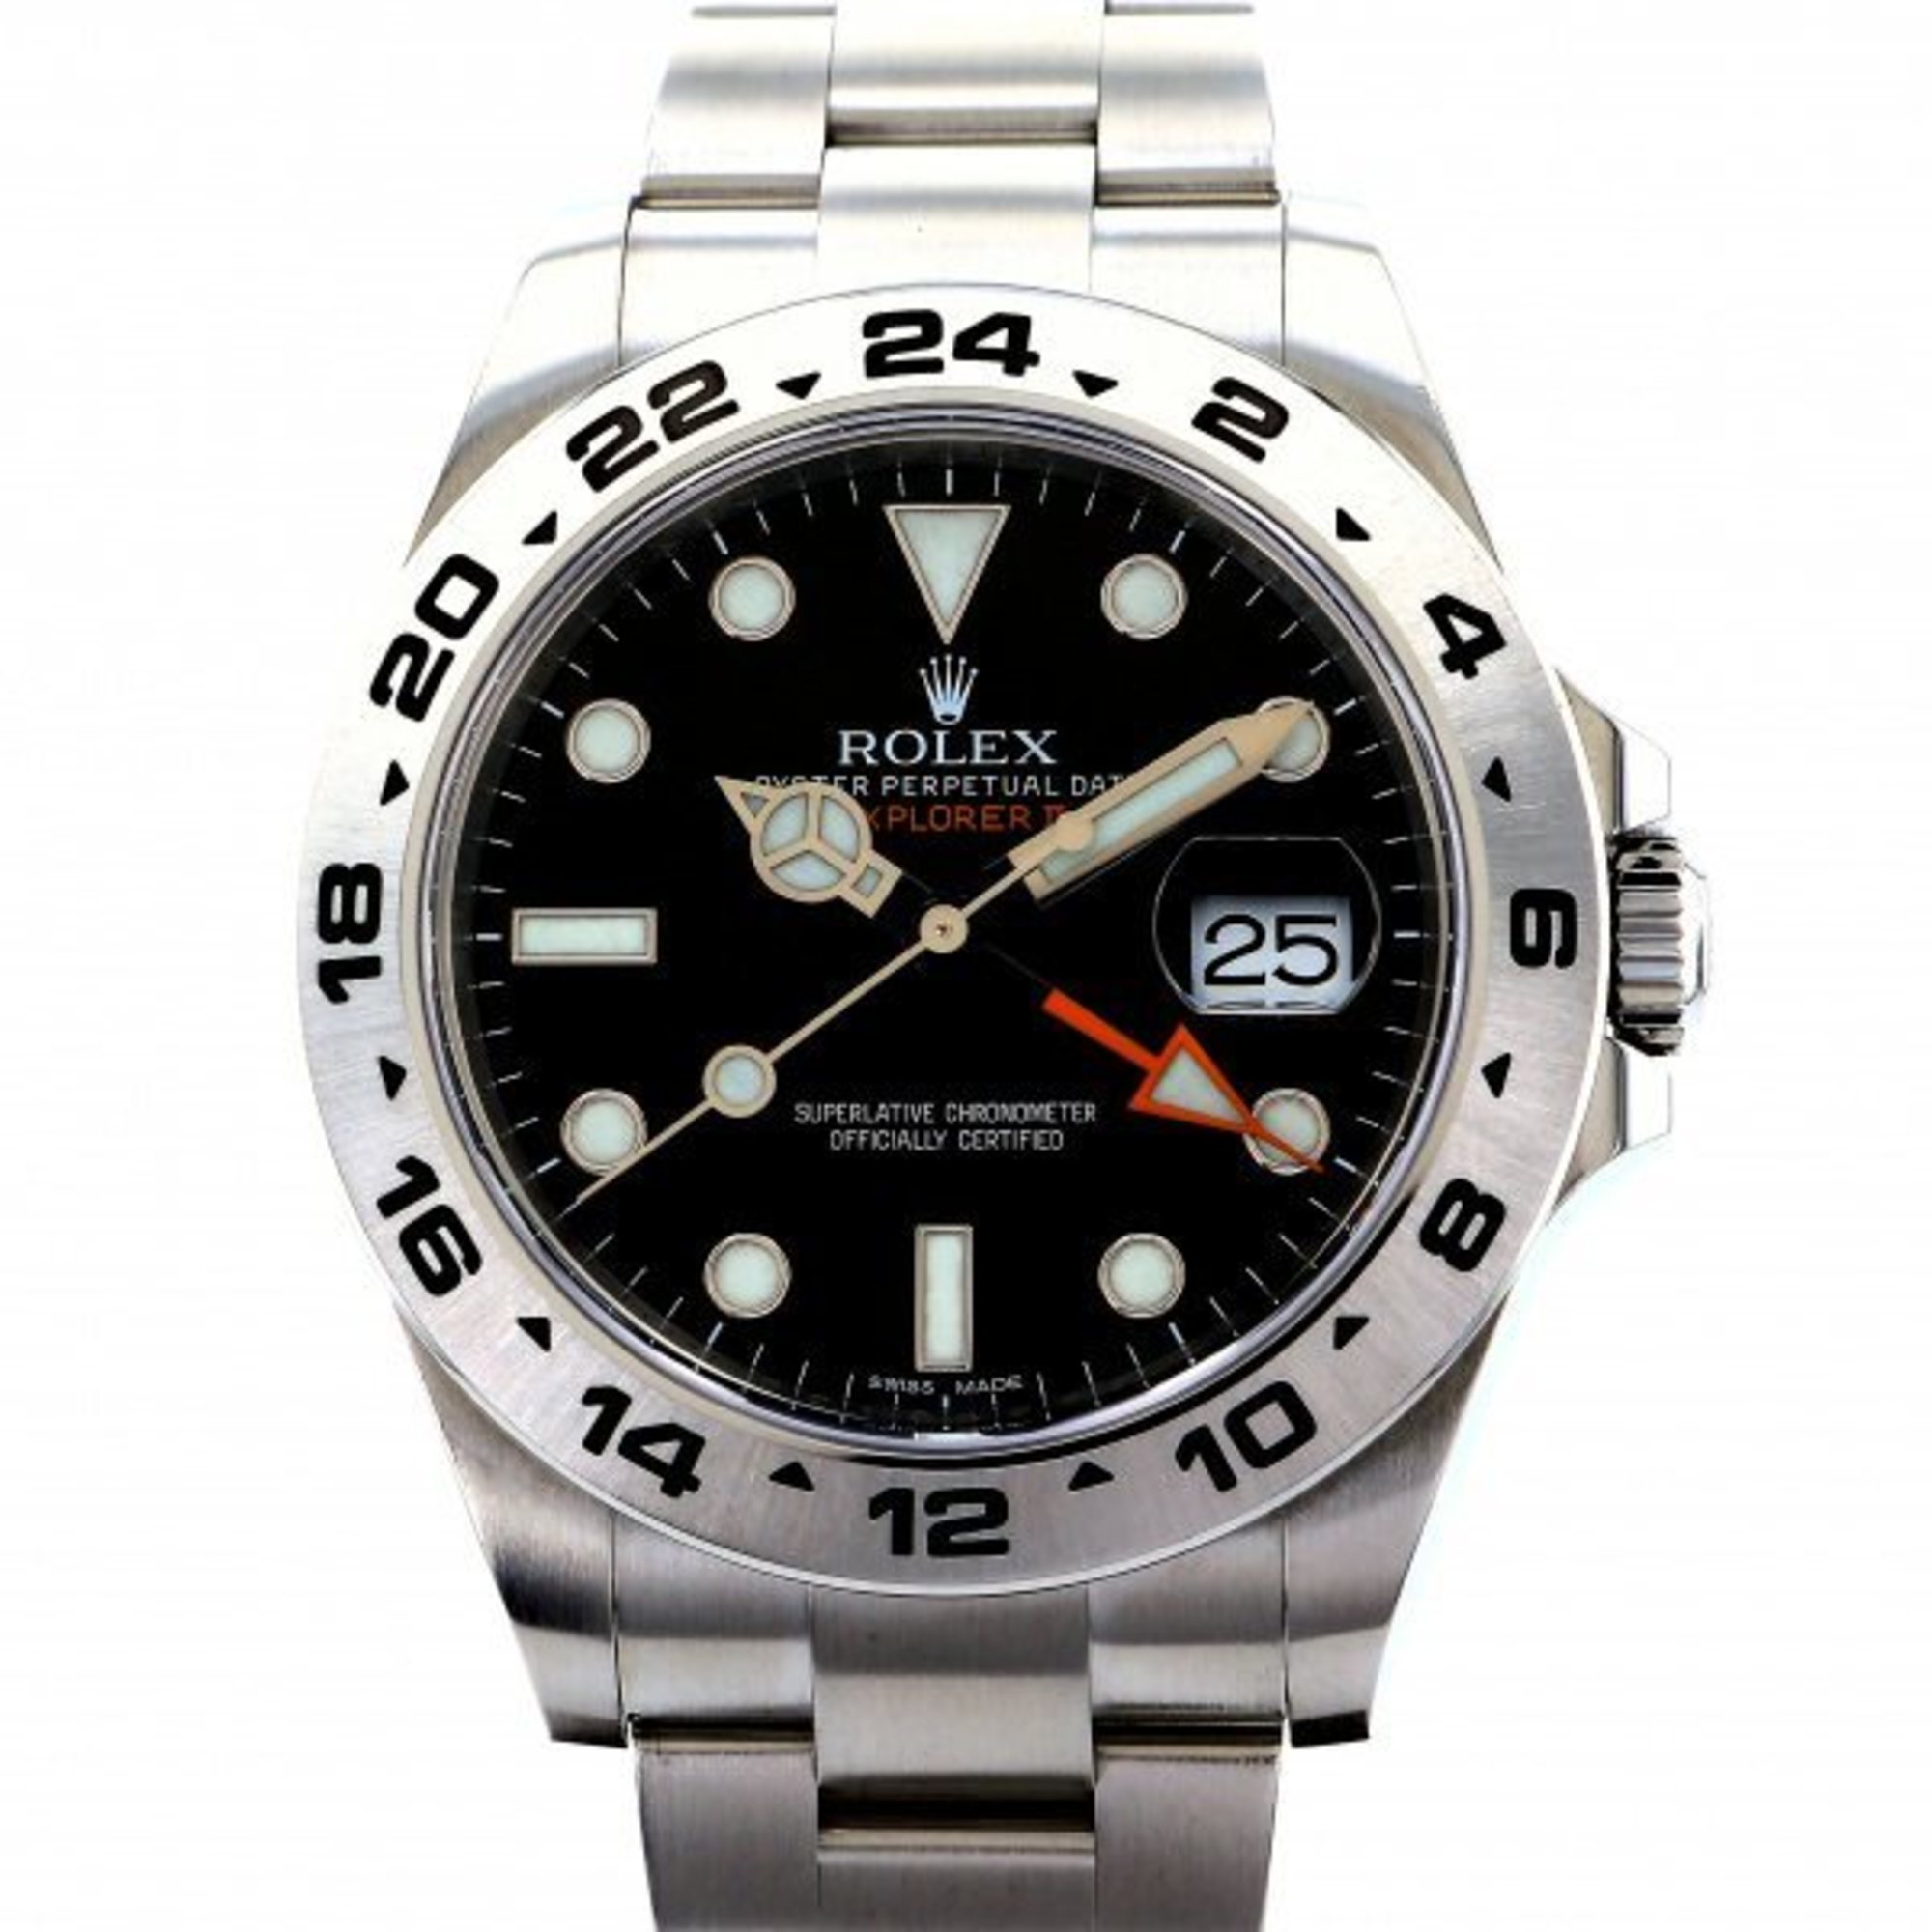 Rolex ROLEX Explorer II 216570 black dial watch men